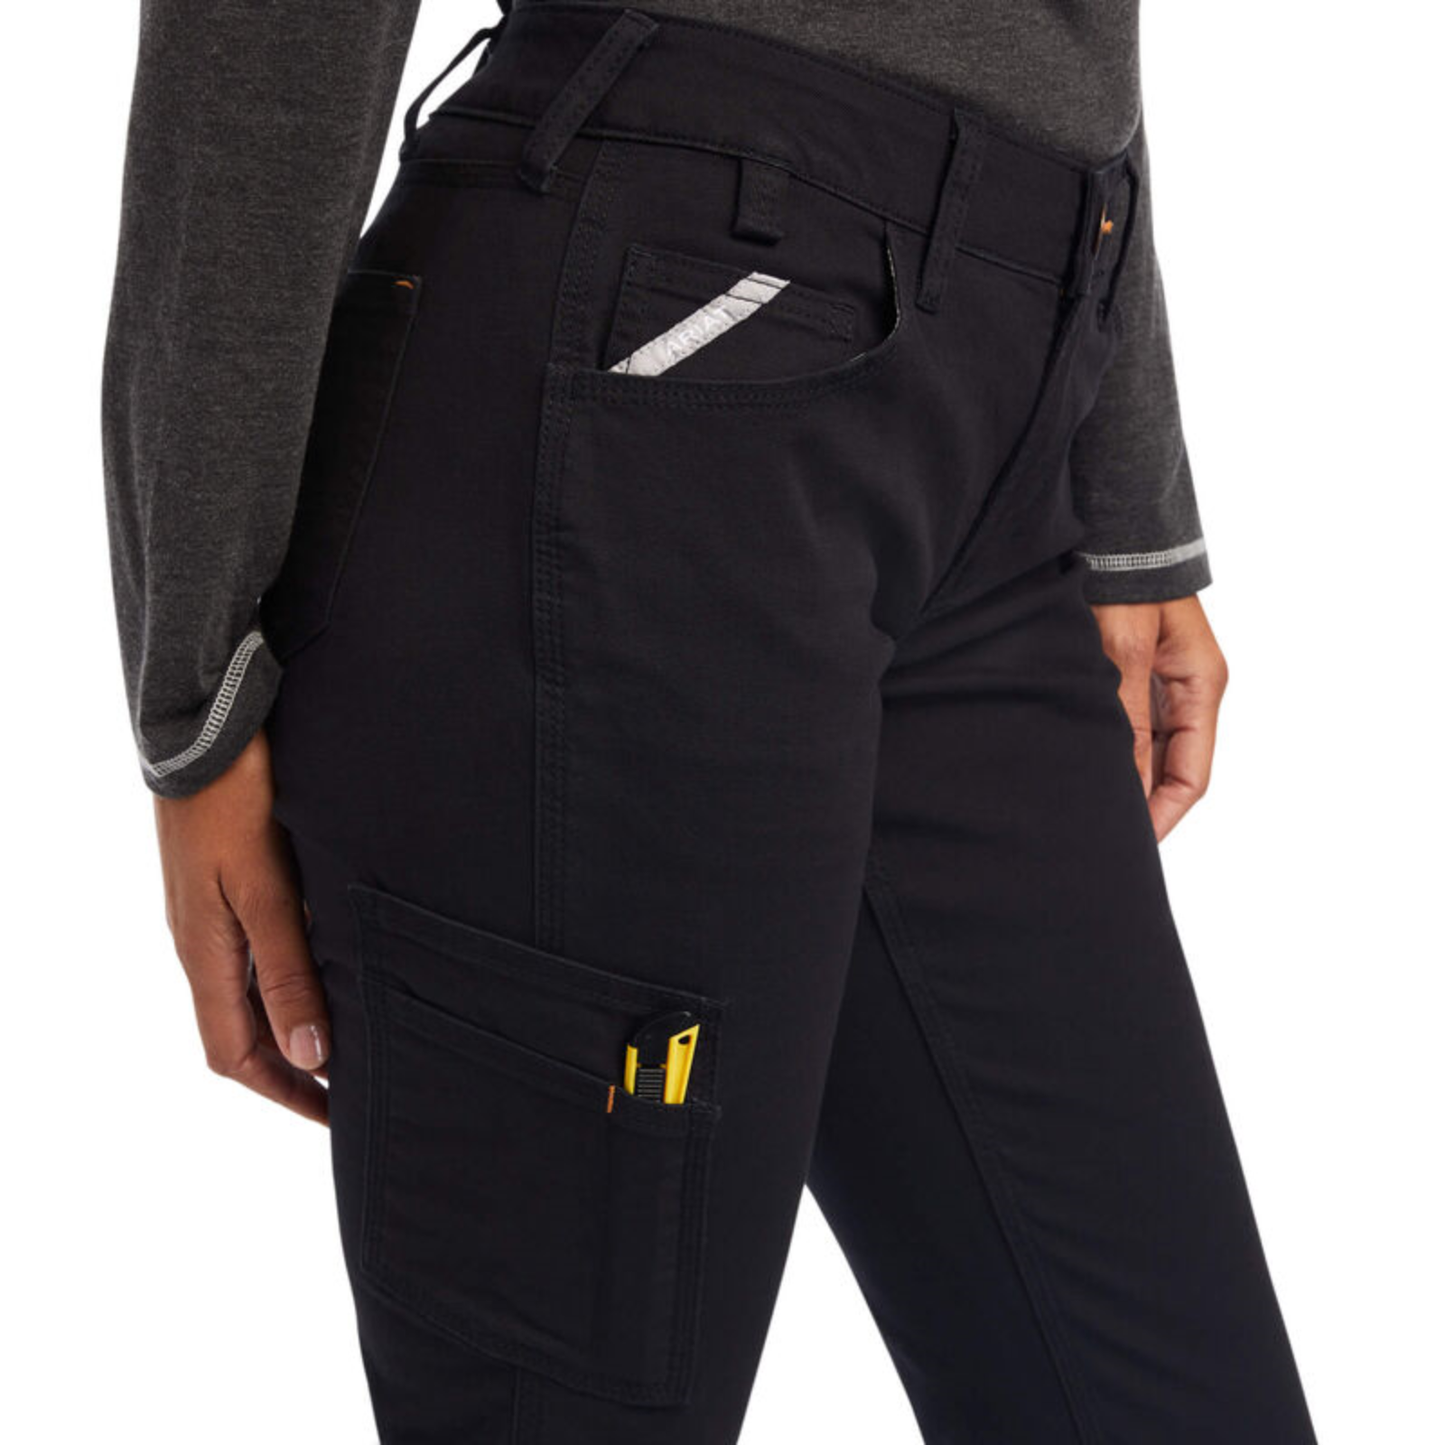 Ariat® Ladies Rebar DuraStretch™ Made Tough Black Work Pants 10041162